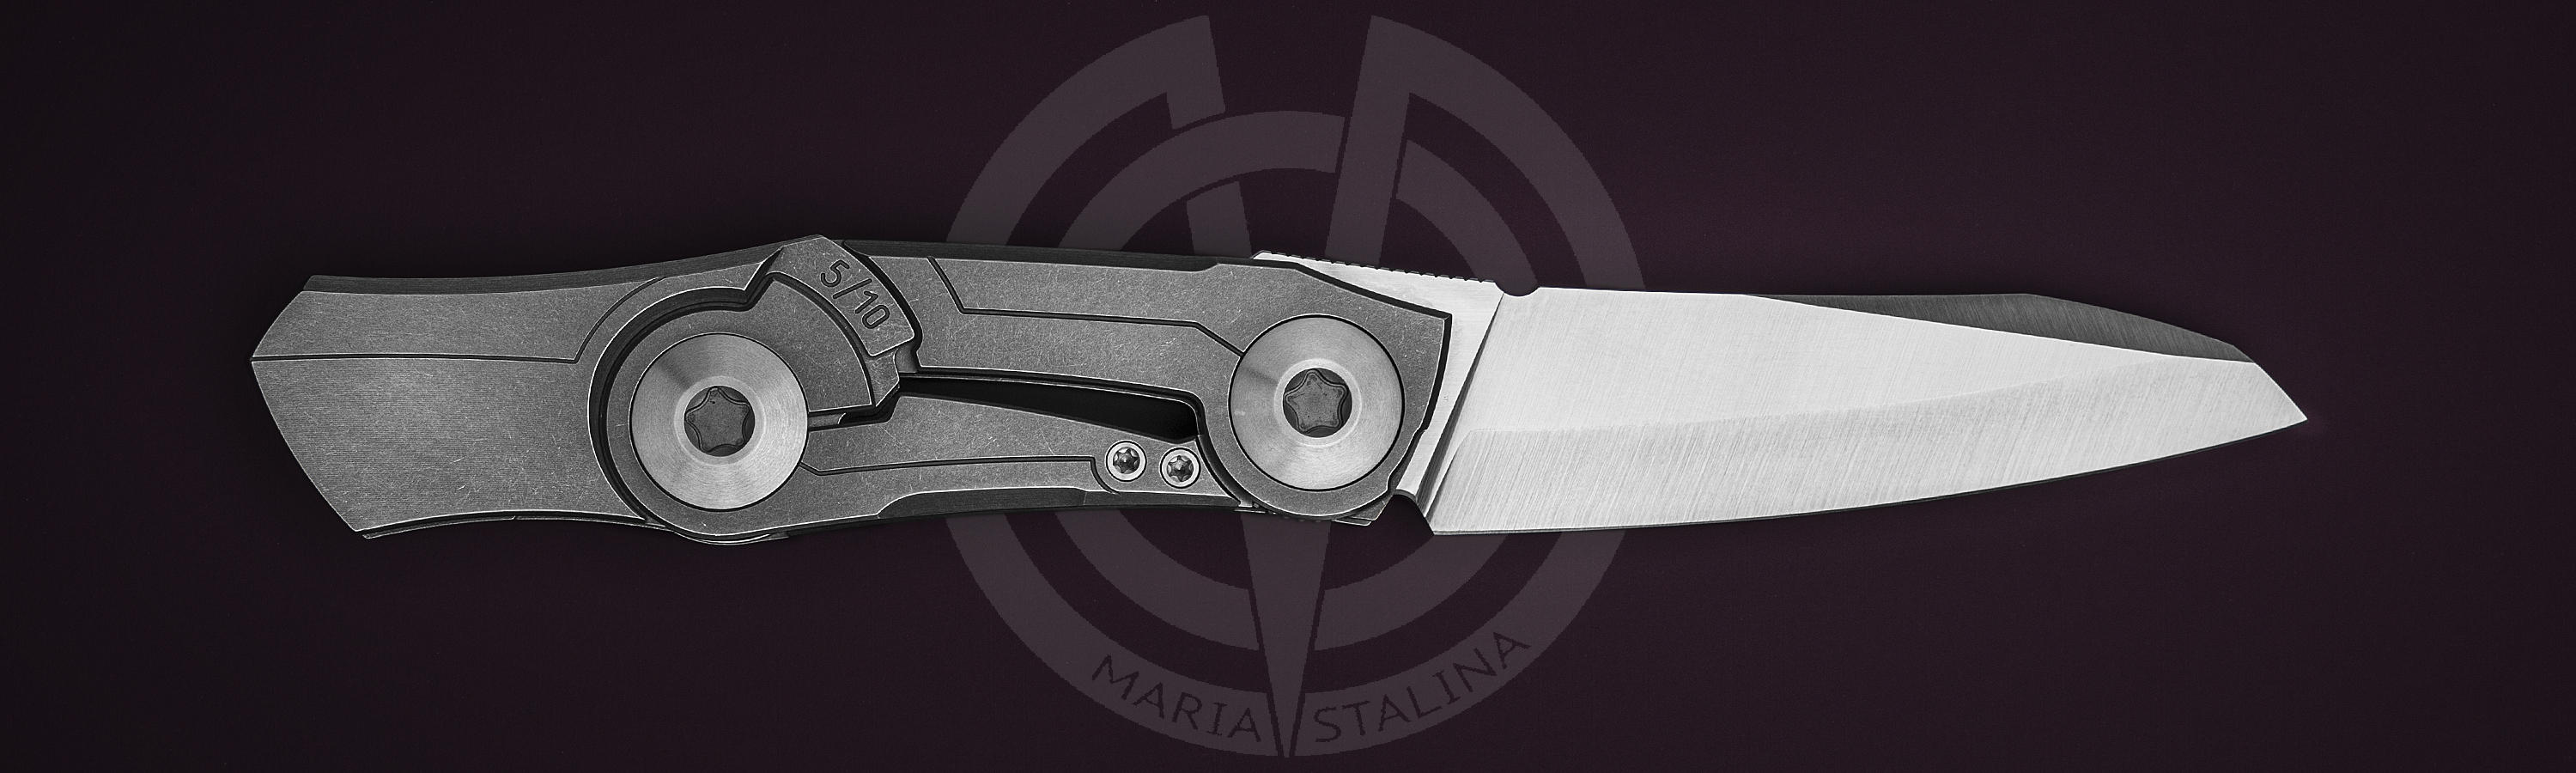 Клинок ножа из Vanax 37